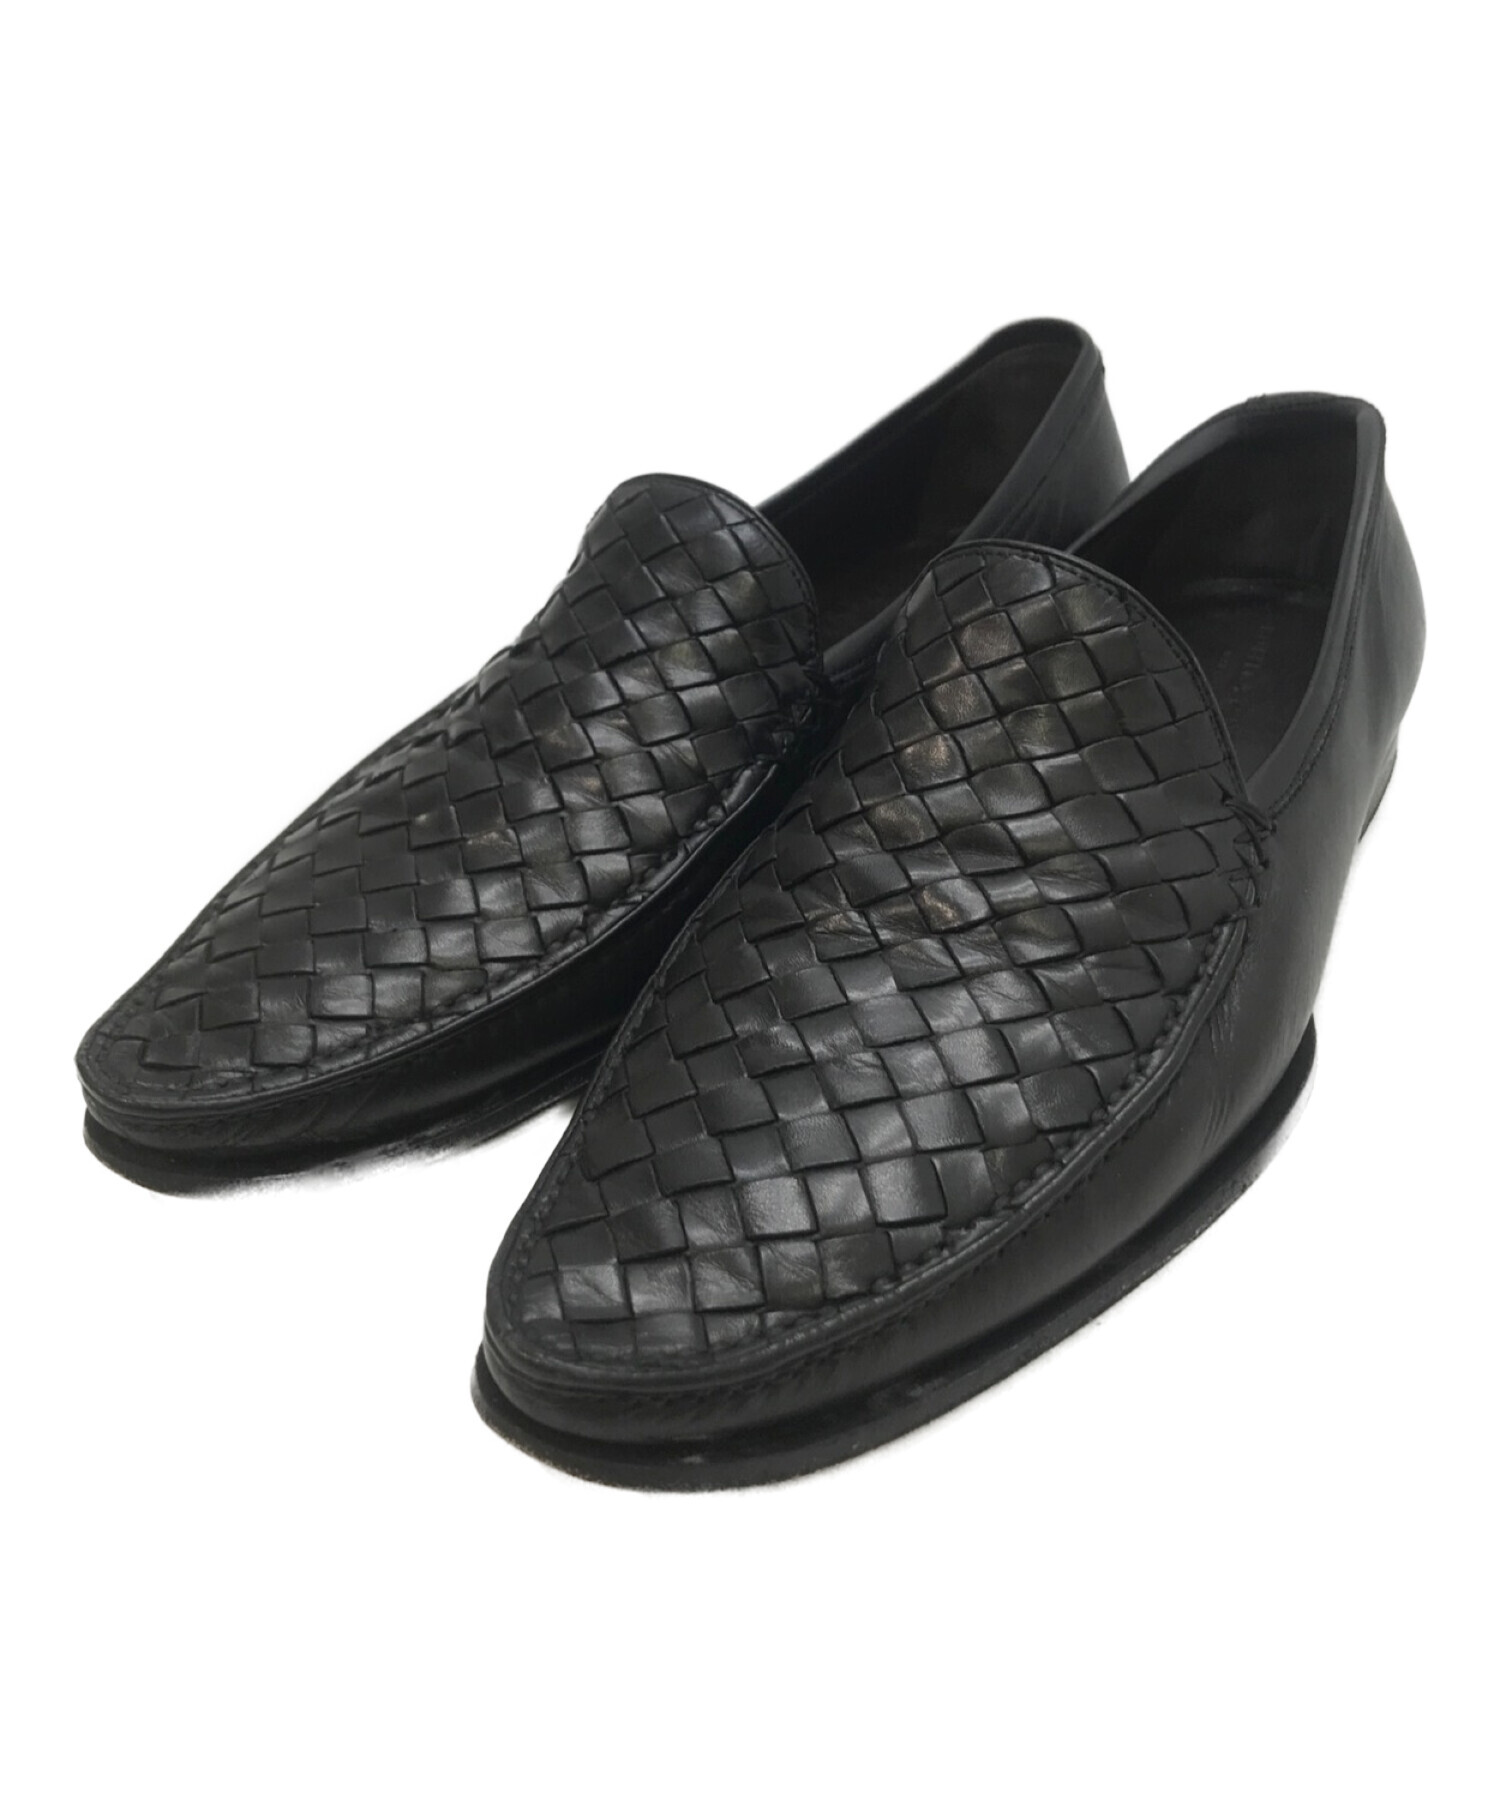 高級品市場 未使用 BOTTEGA VENETA黒ローファー(一部傷あり) 靴 